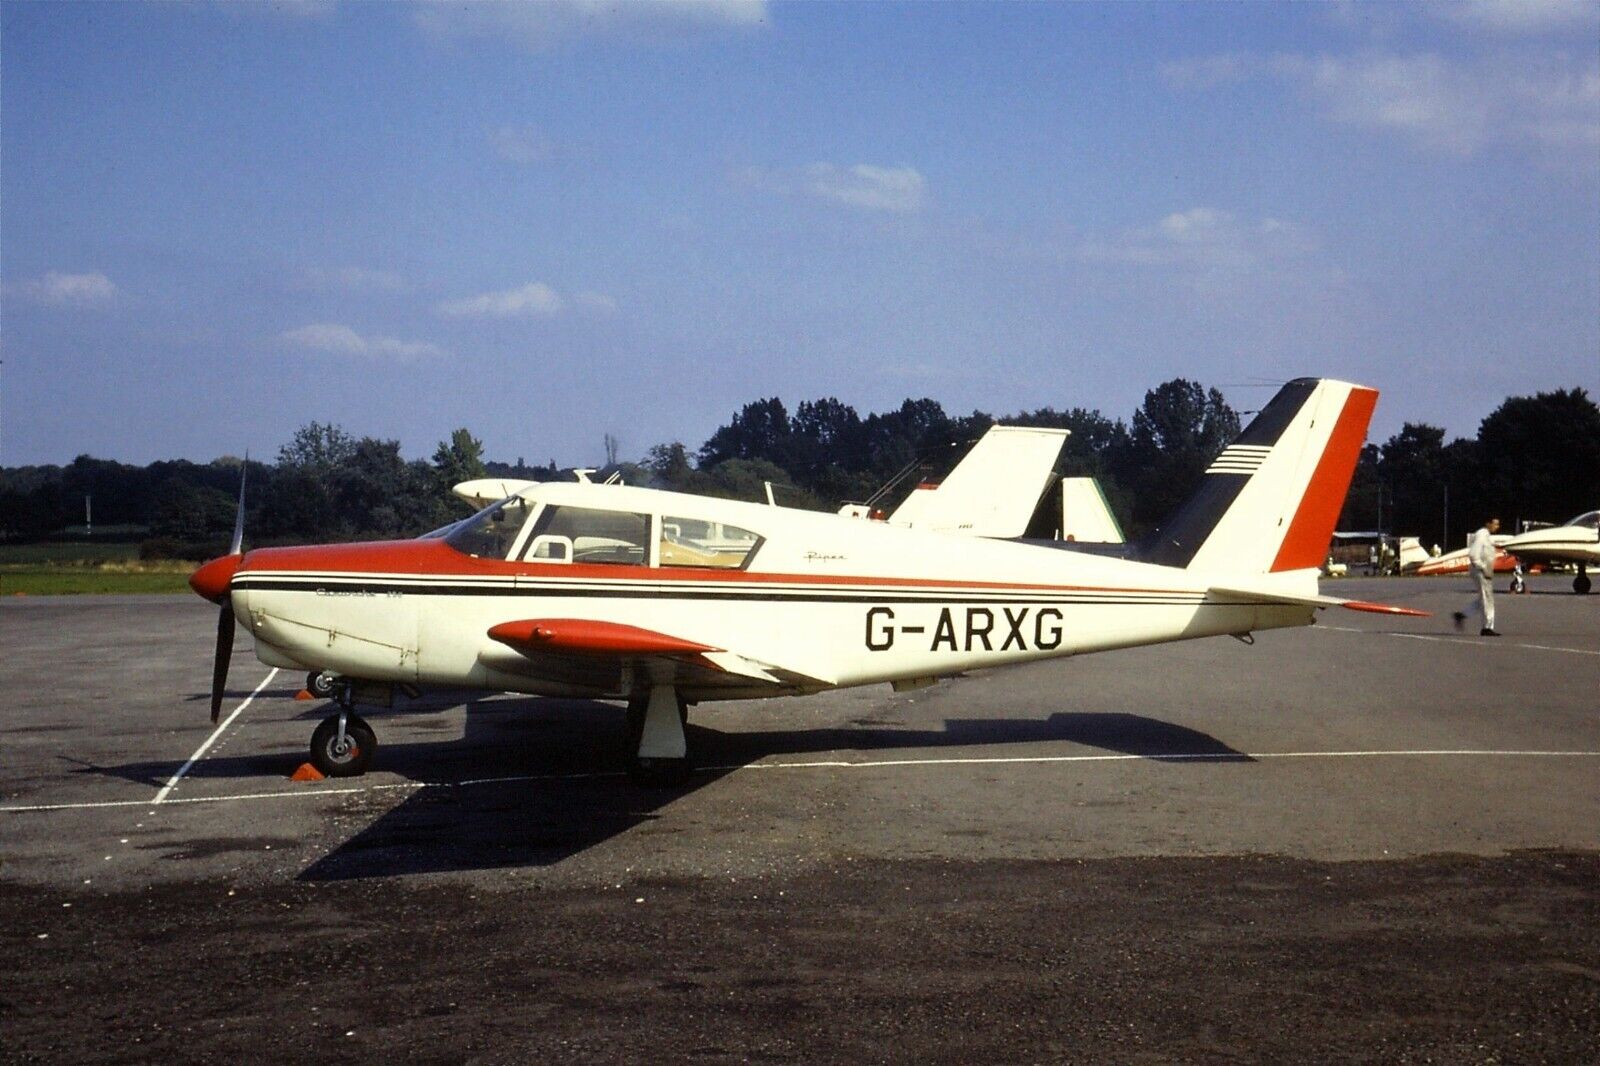 1971 Original 35mm colour slide of Piper PA-24-250 Comanche G-ARXG